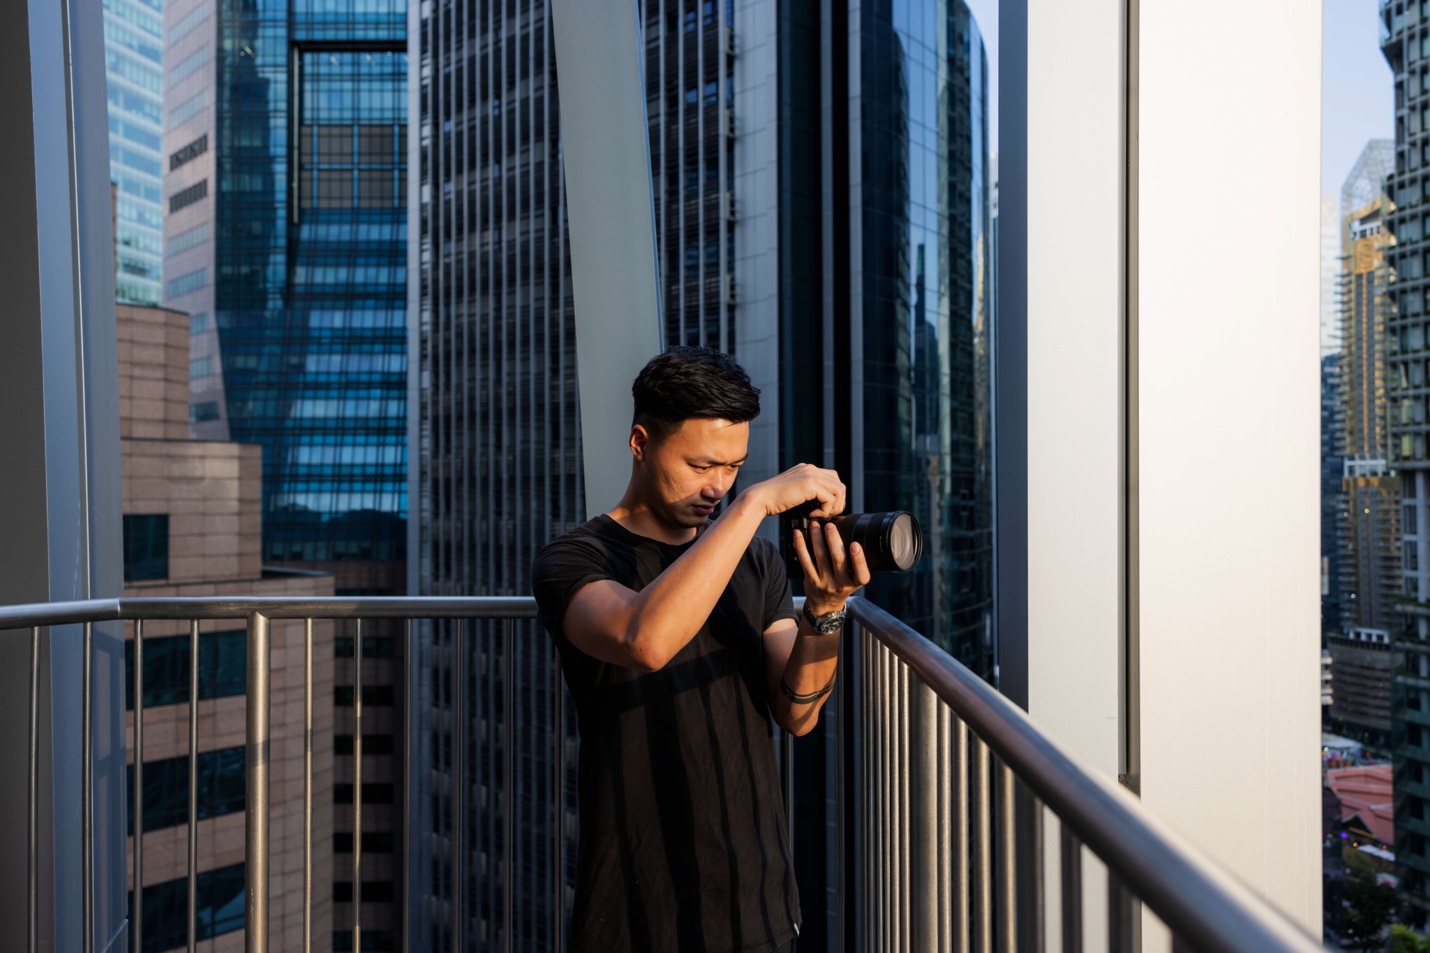 Câu chuyện về nhiếp ảnh gia trẻ “phải lòng” đất nước Singapore - Ảnh 1.